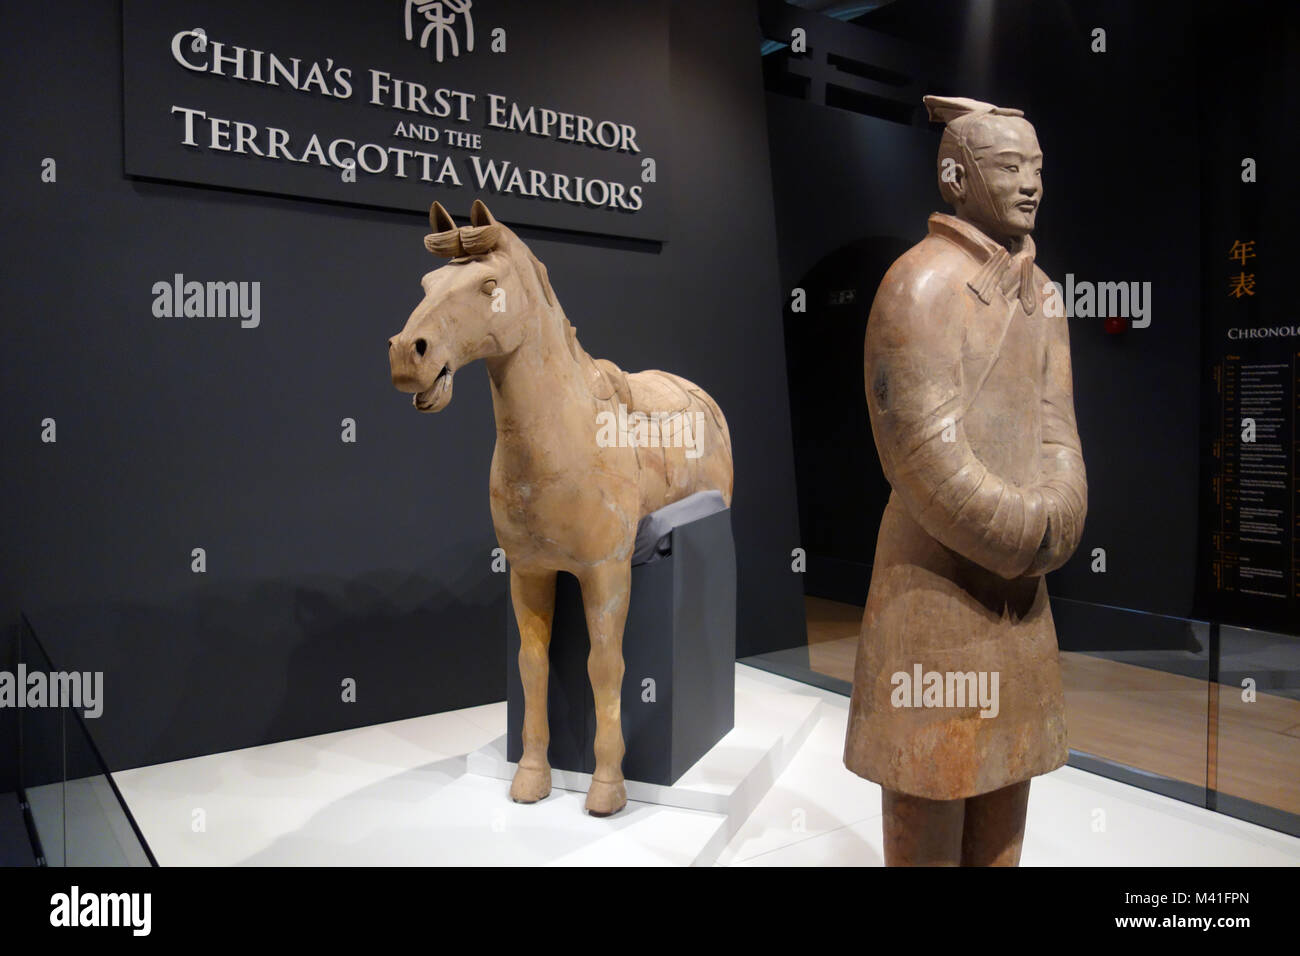 Leben Größe Pferd Keeper und Kavallerie Pferd in Chinas erster Kaiser und die Terrakotta-krieger Ausstellung auf der Welt Museum, Liverpool. Stockfoto